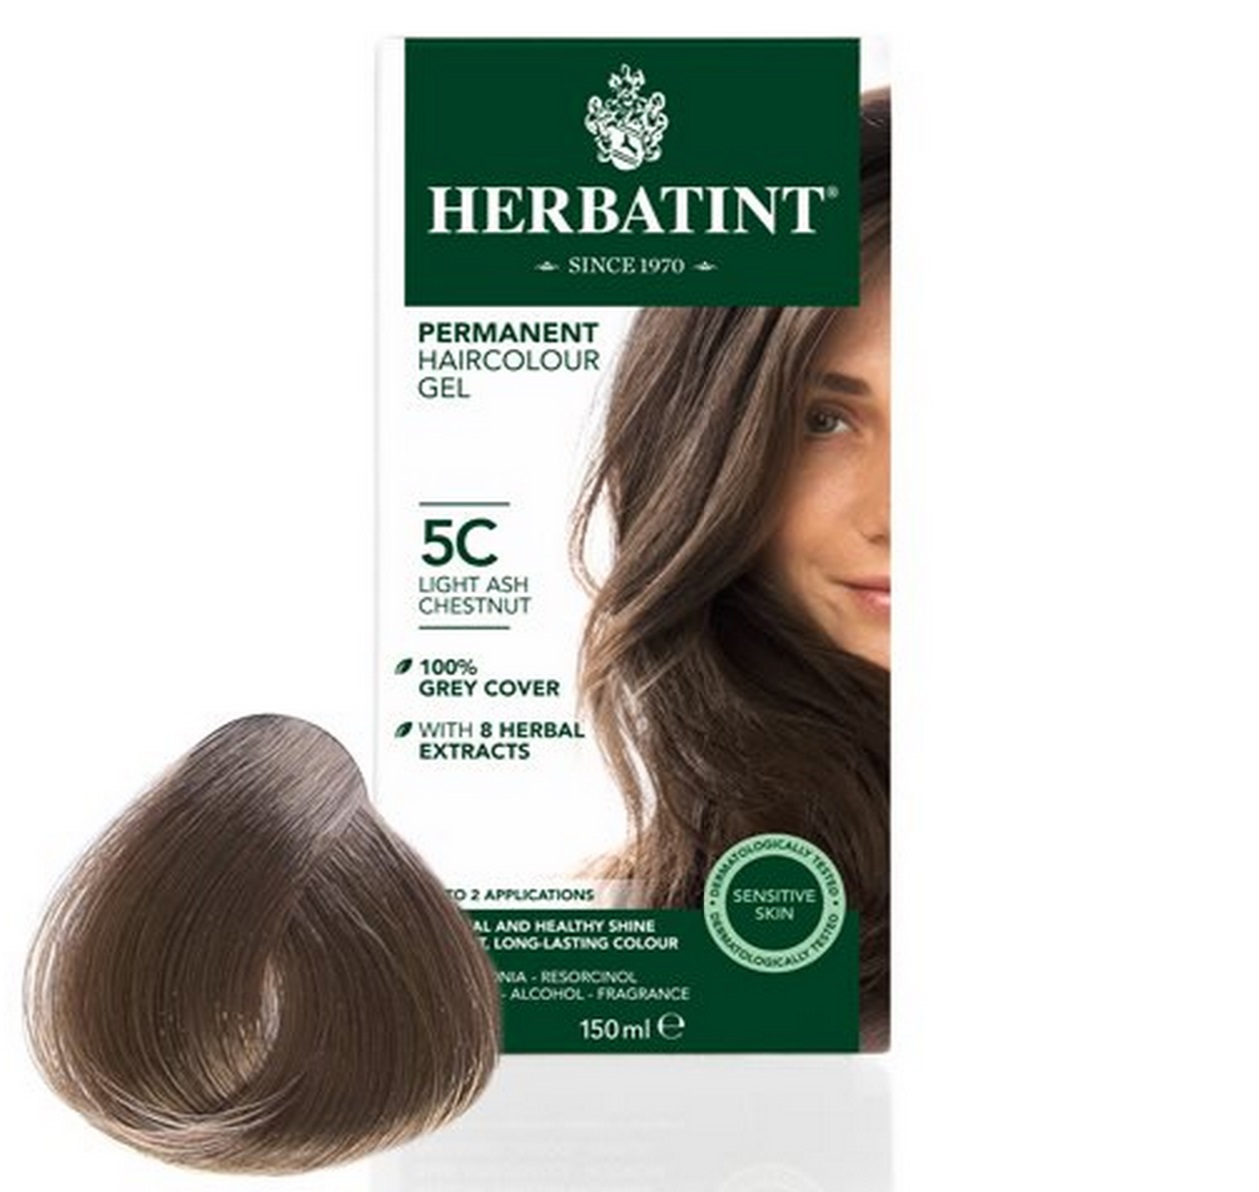 Billede af Herbatint 5C hårfarve Light Ash Chestnut, 150ml.